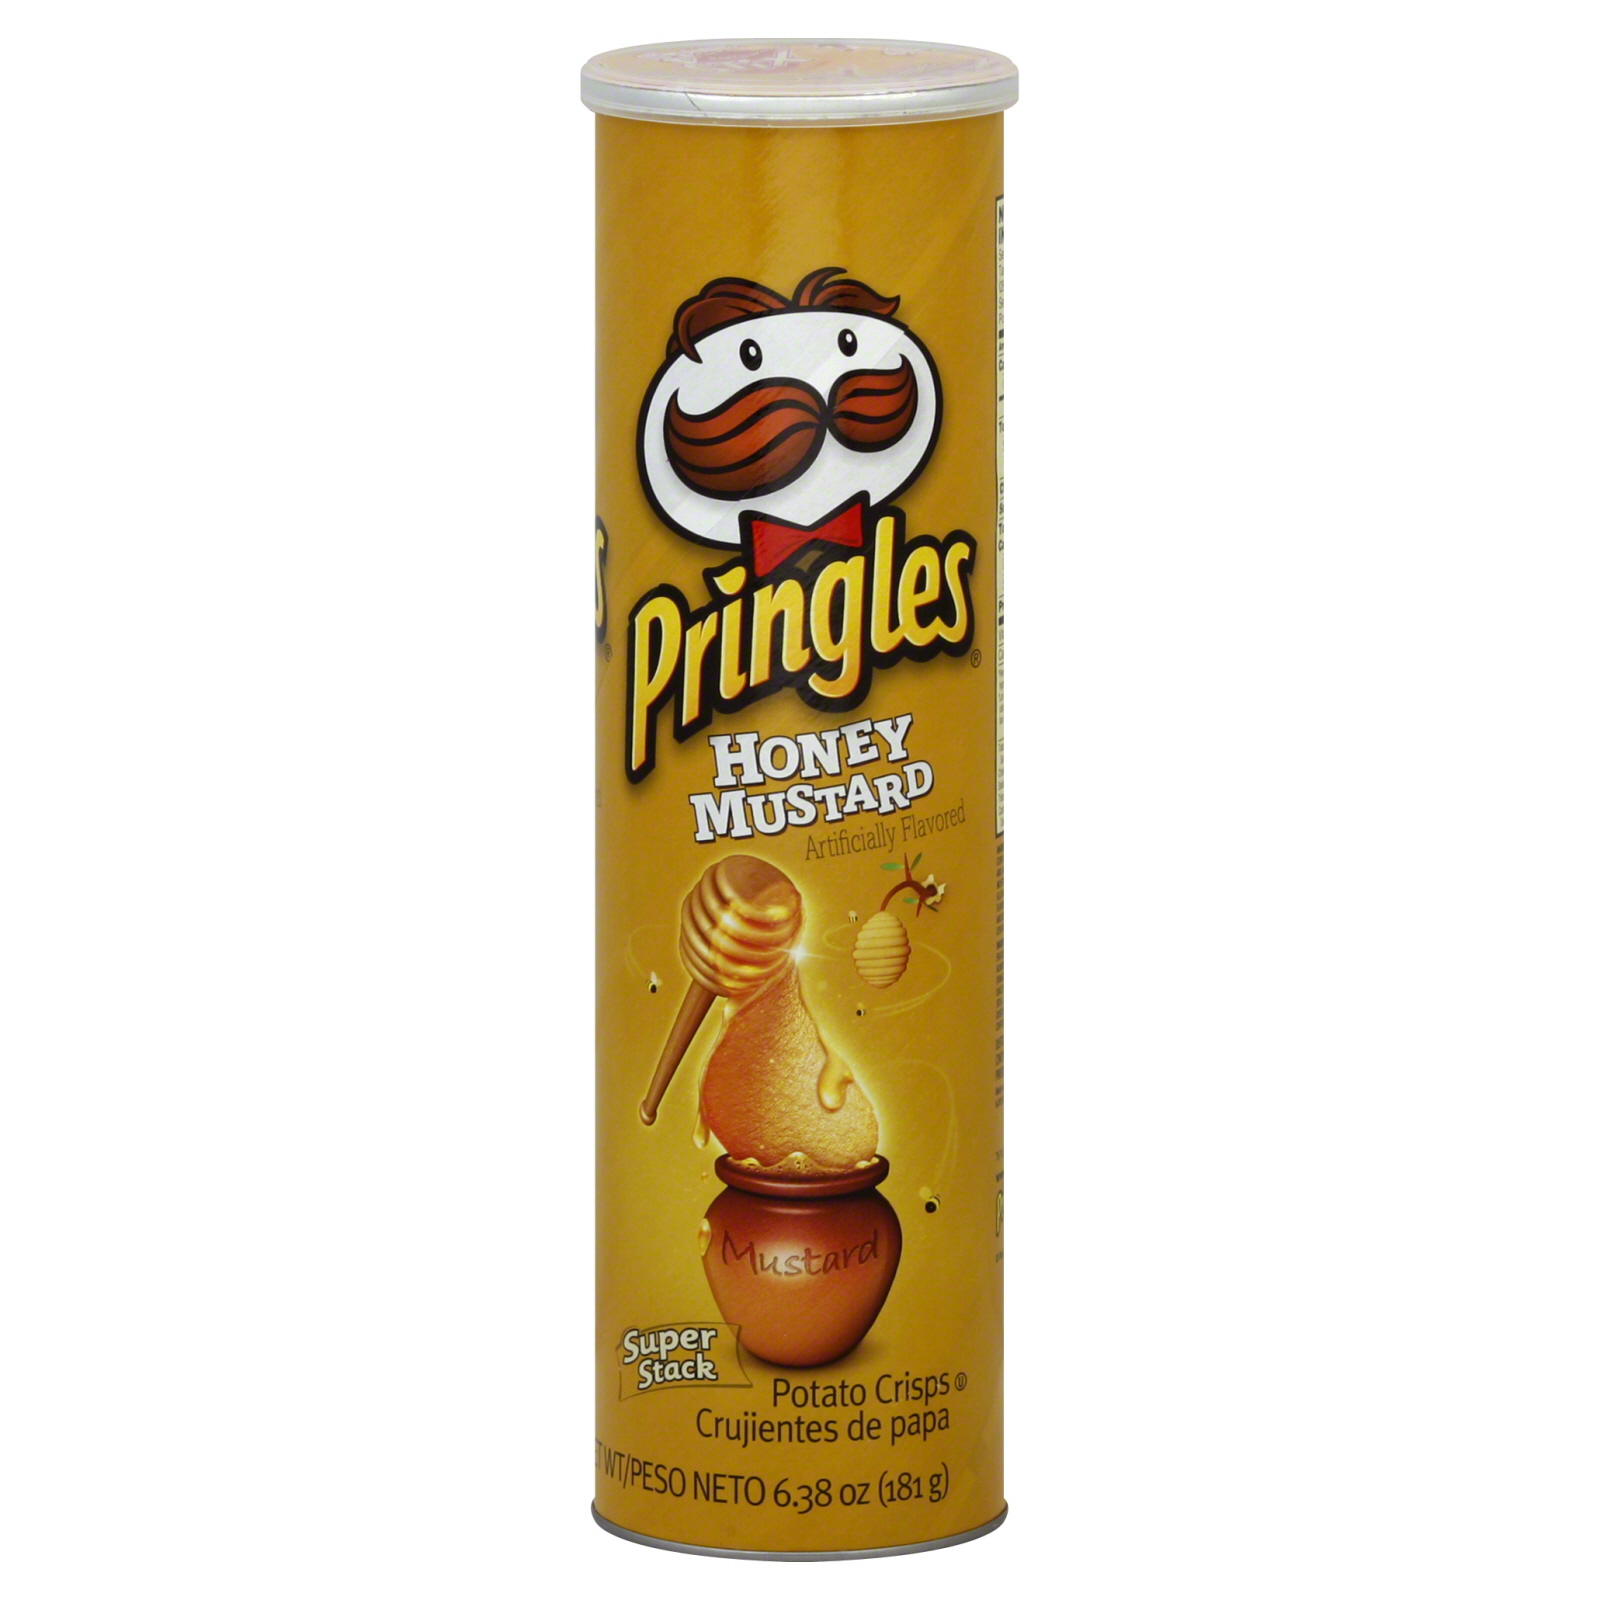 Pringles Super Stack Potato Crisps, Honey Mustard, 6.38 oz (181 g)